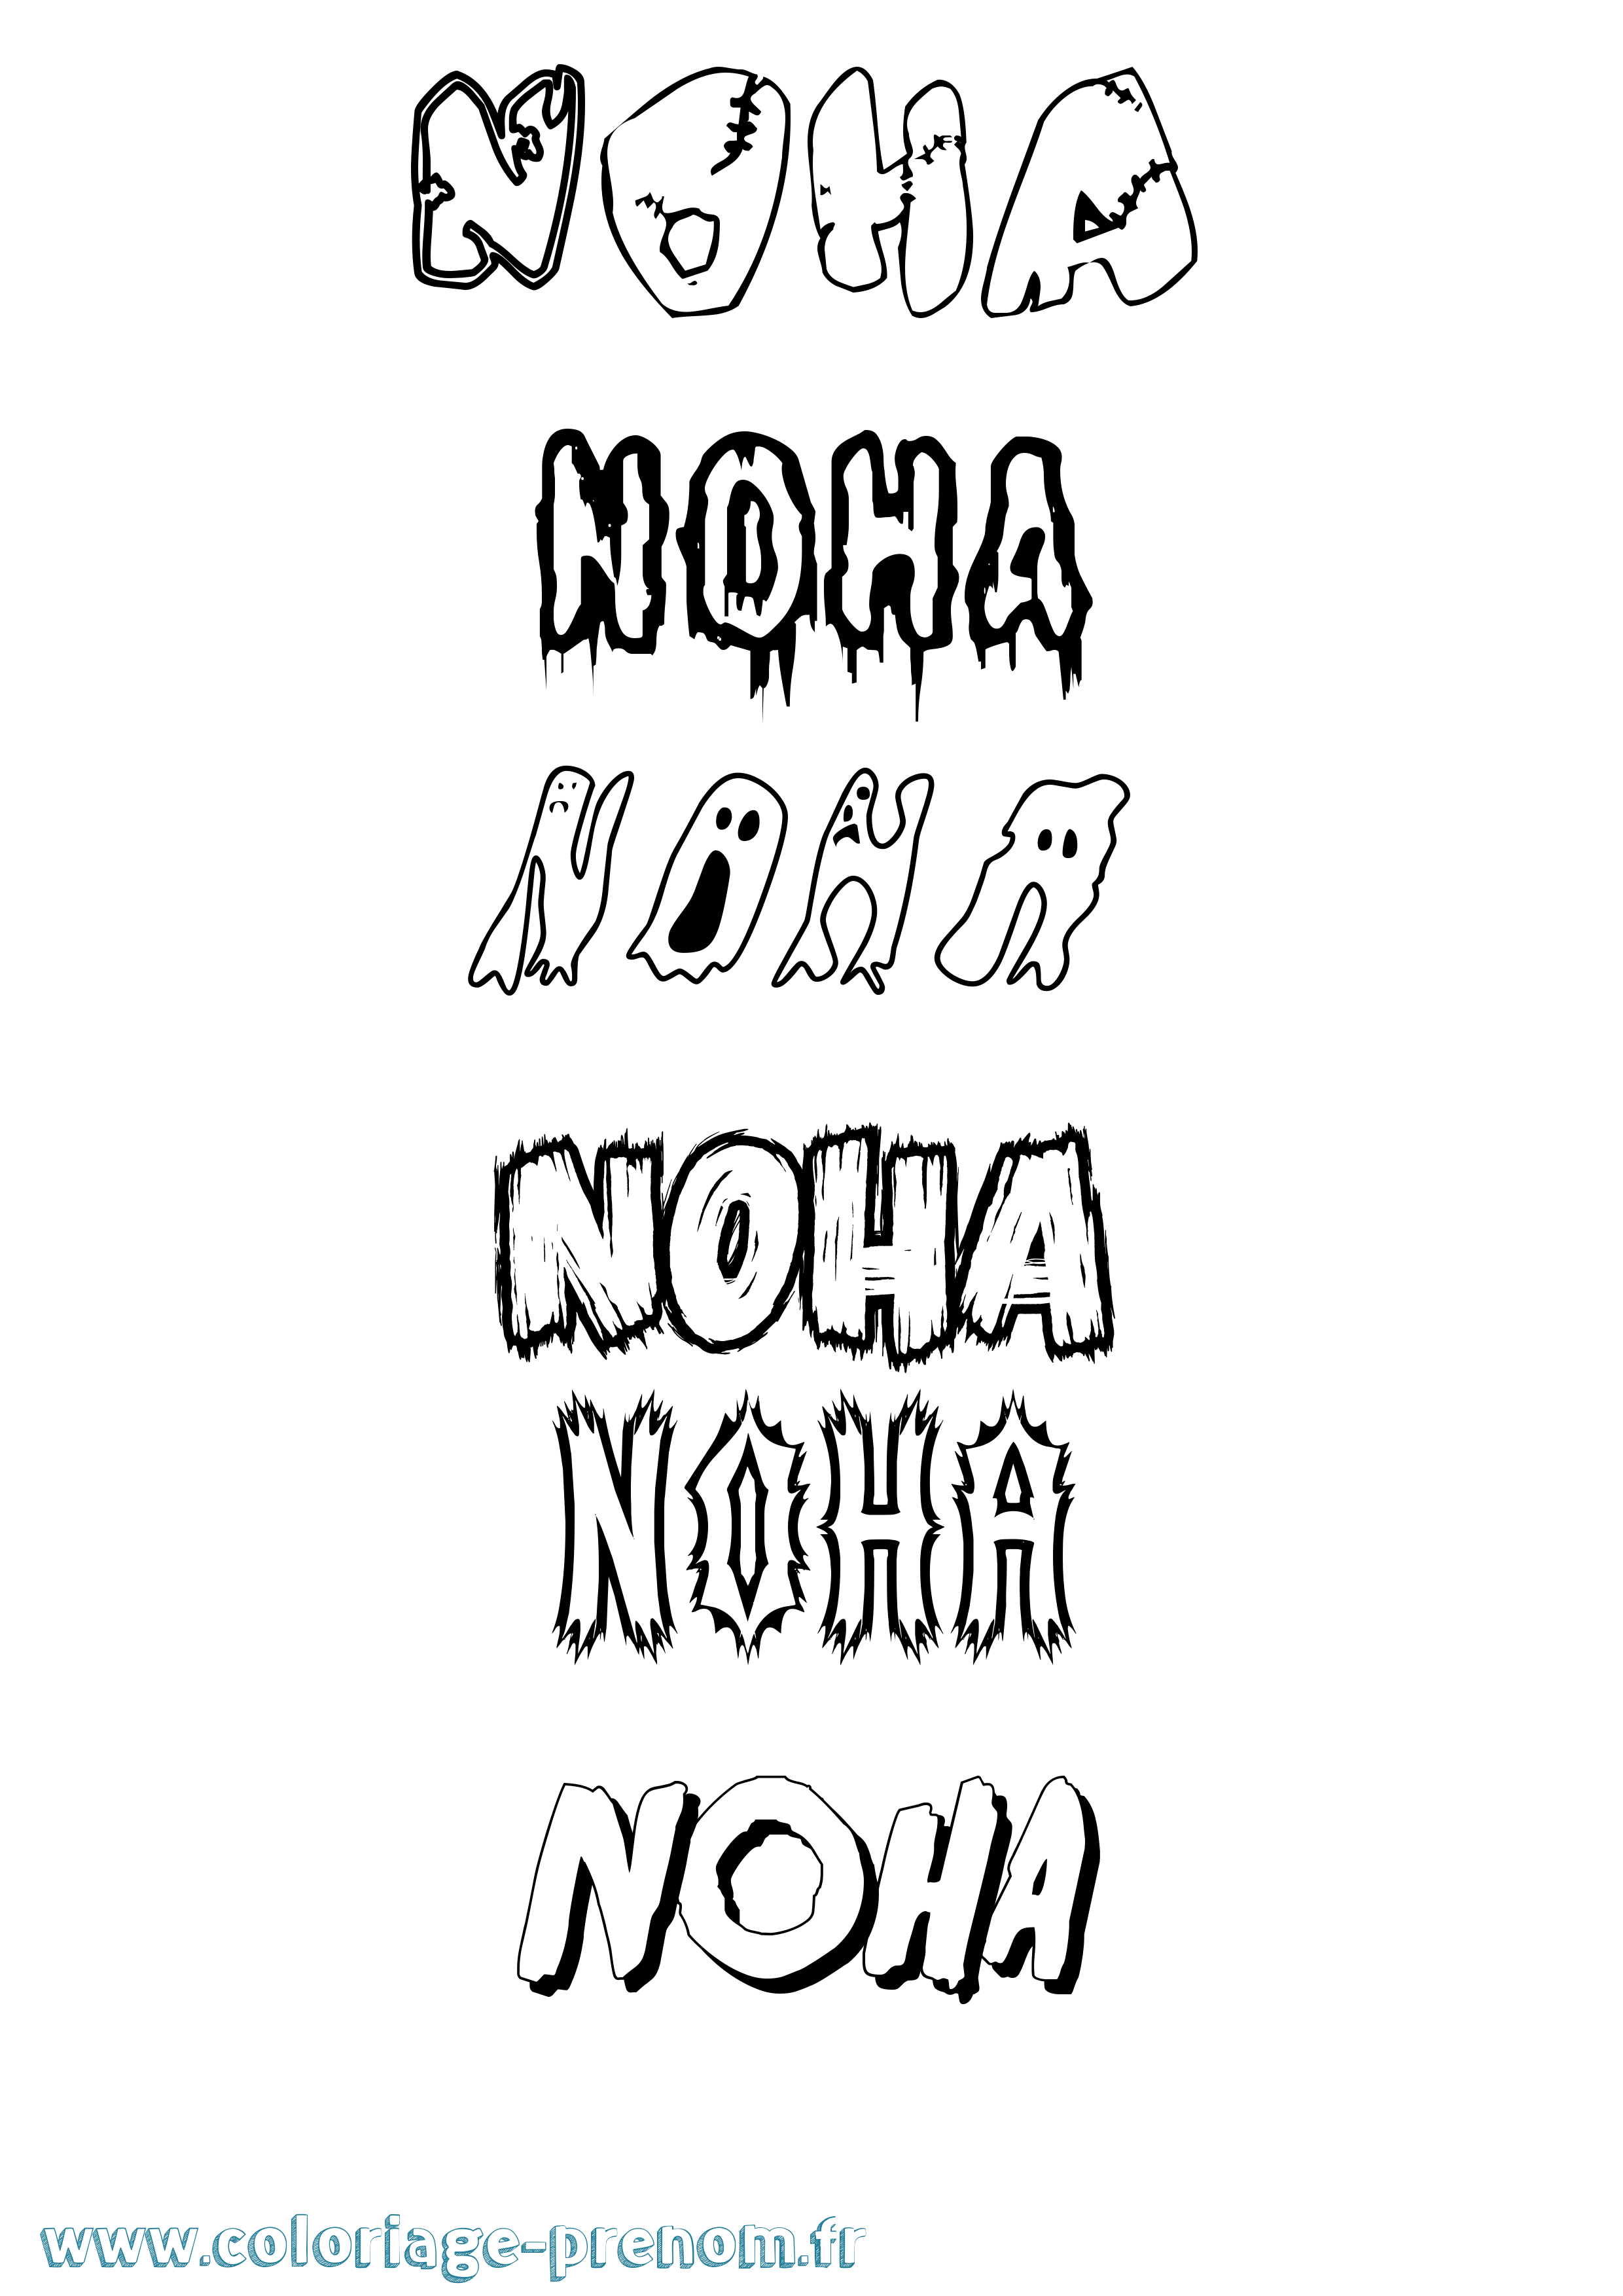 Coloriage prénom Noha